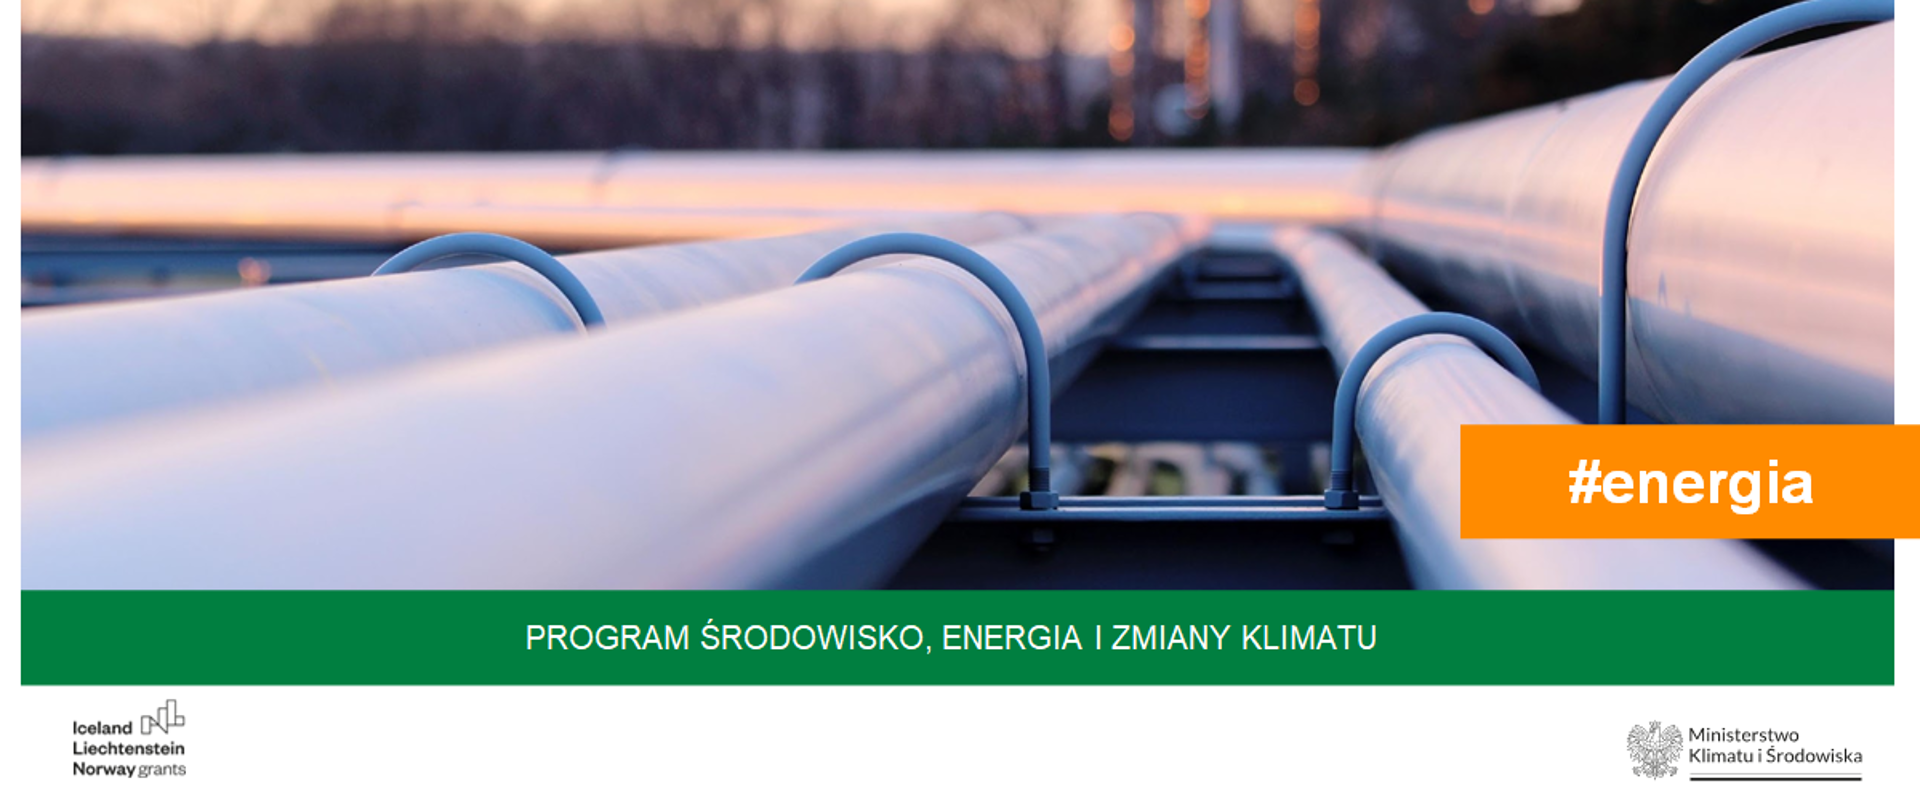 Program Środowisko, Energia i Zmiany Klimatu #energia